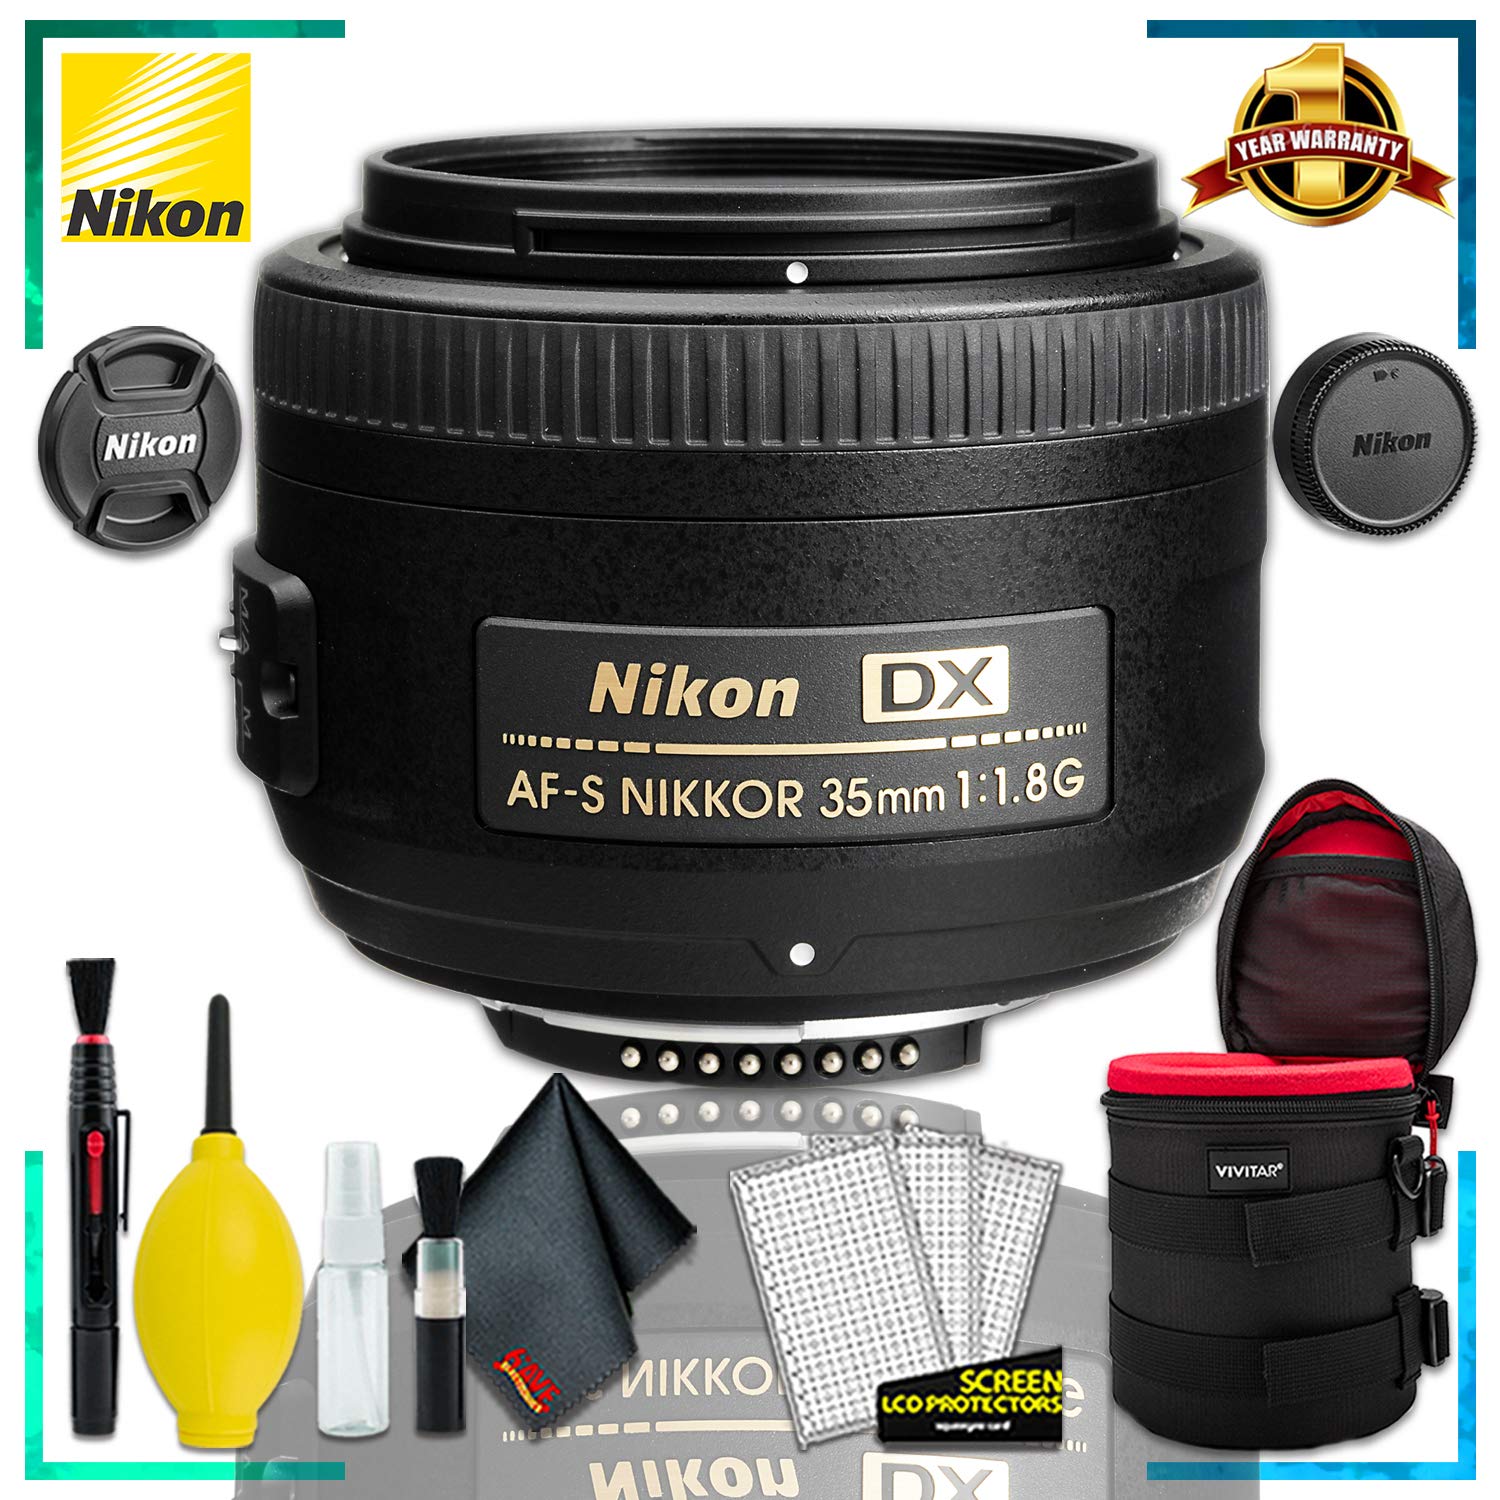 Nikon AF-S DX NIKKOR 35mm f/1.8G Lens + 4.5 inch Vivitar Premium Lens Case + Cleaning Kit